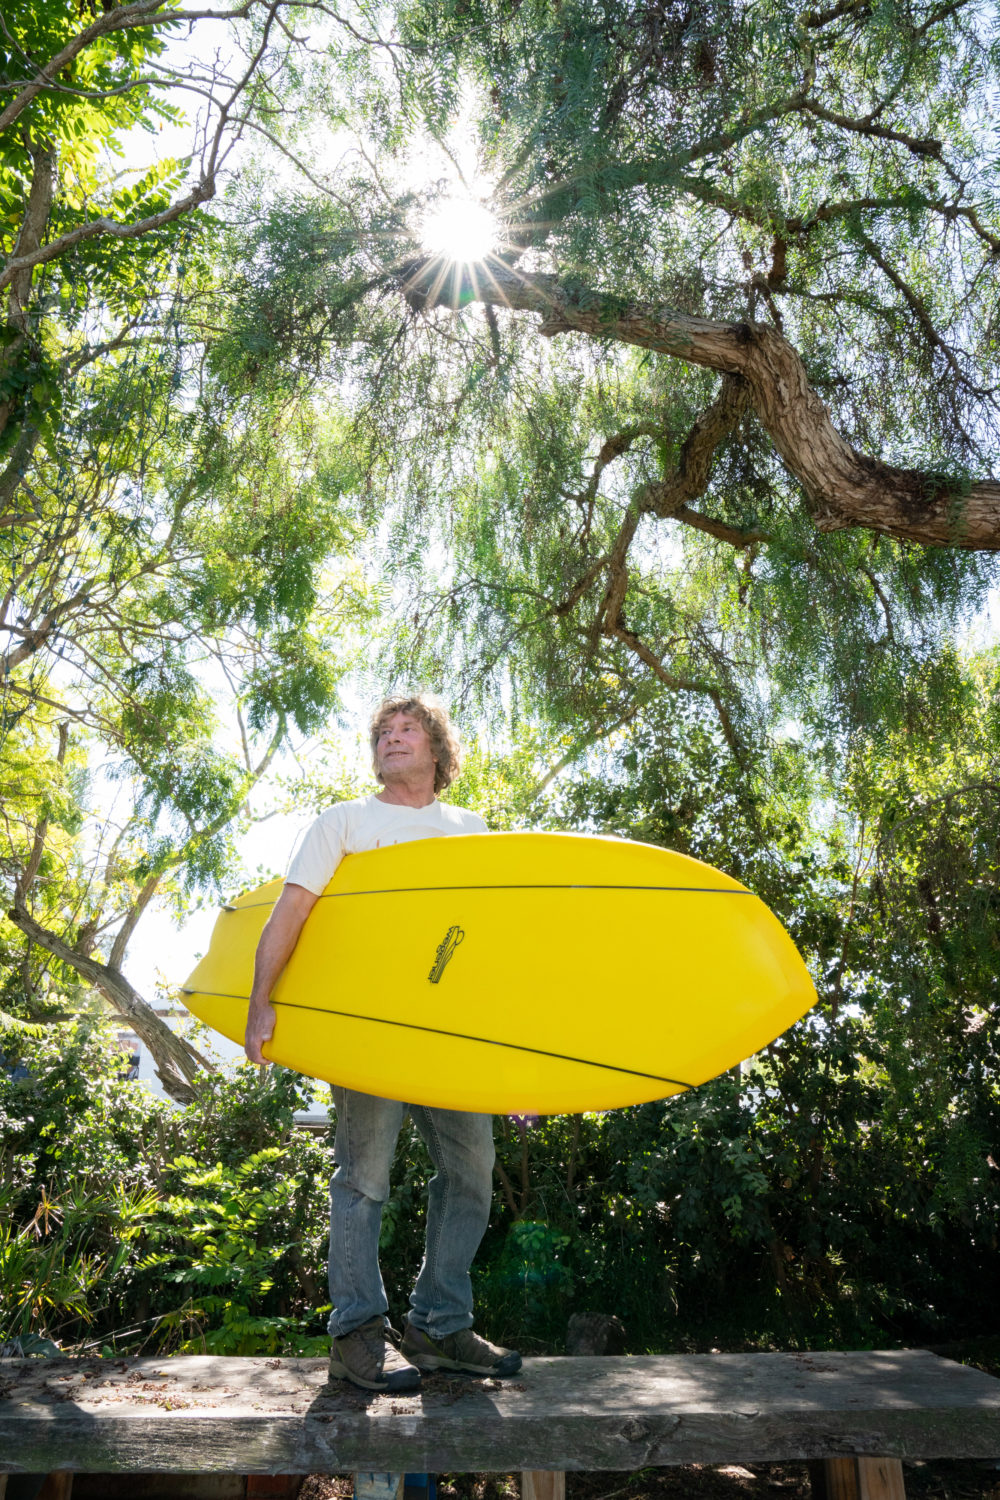 Jon Wegener Bluegill Finless Surfboard